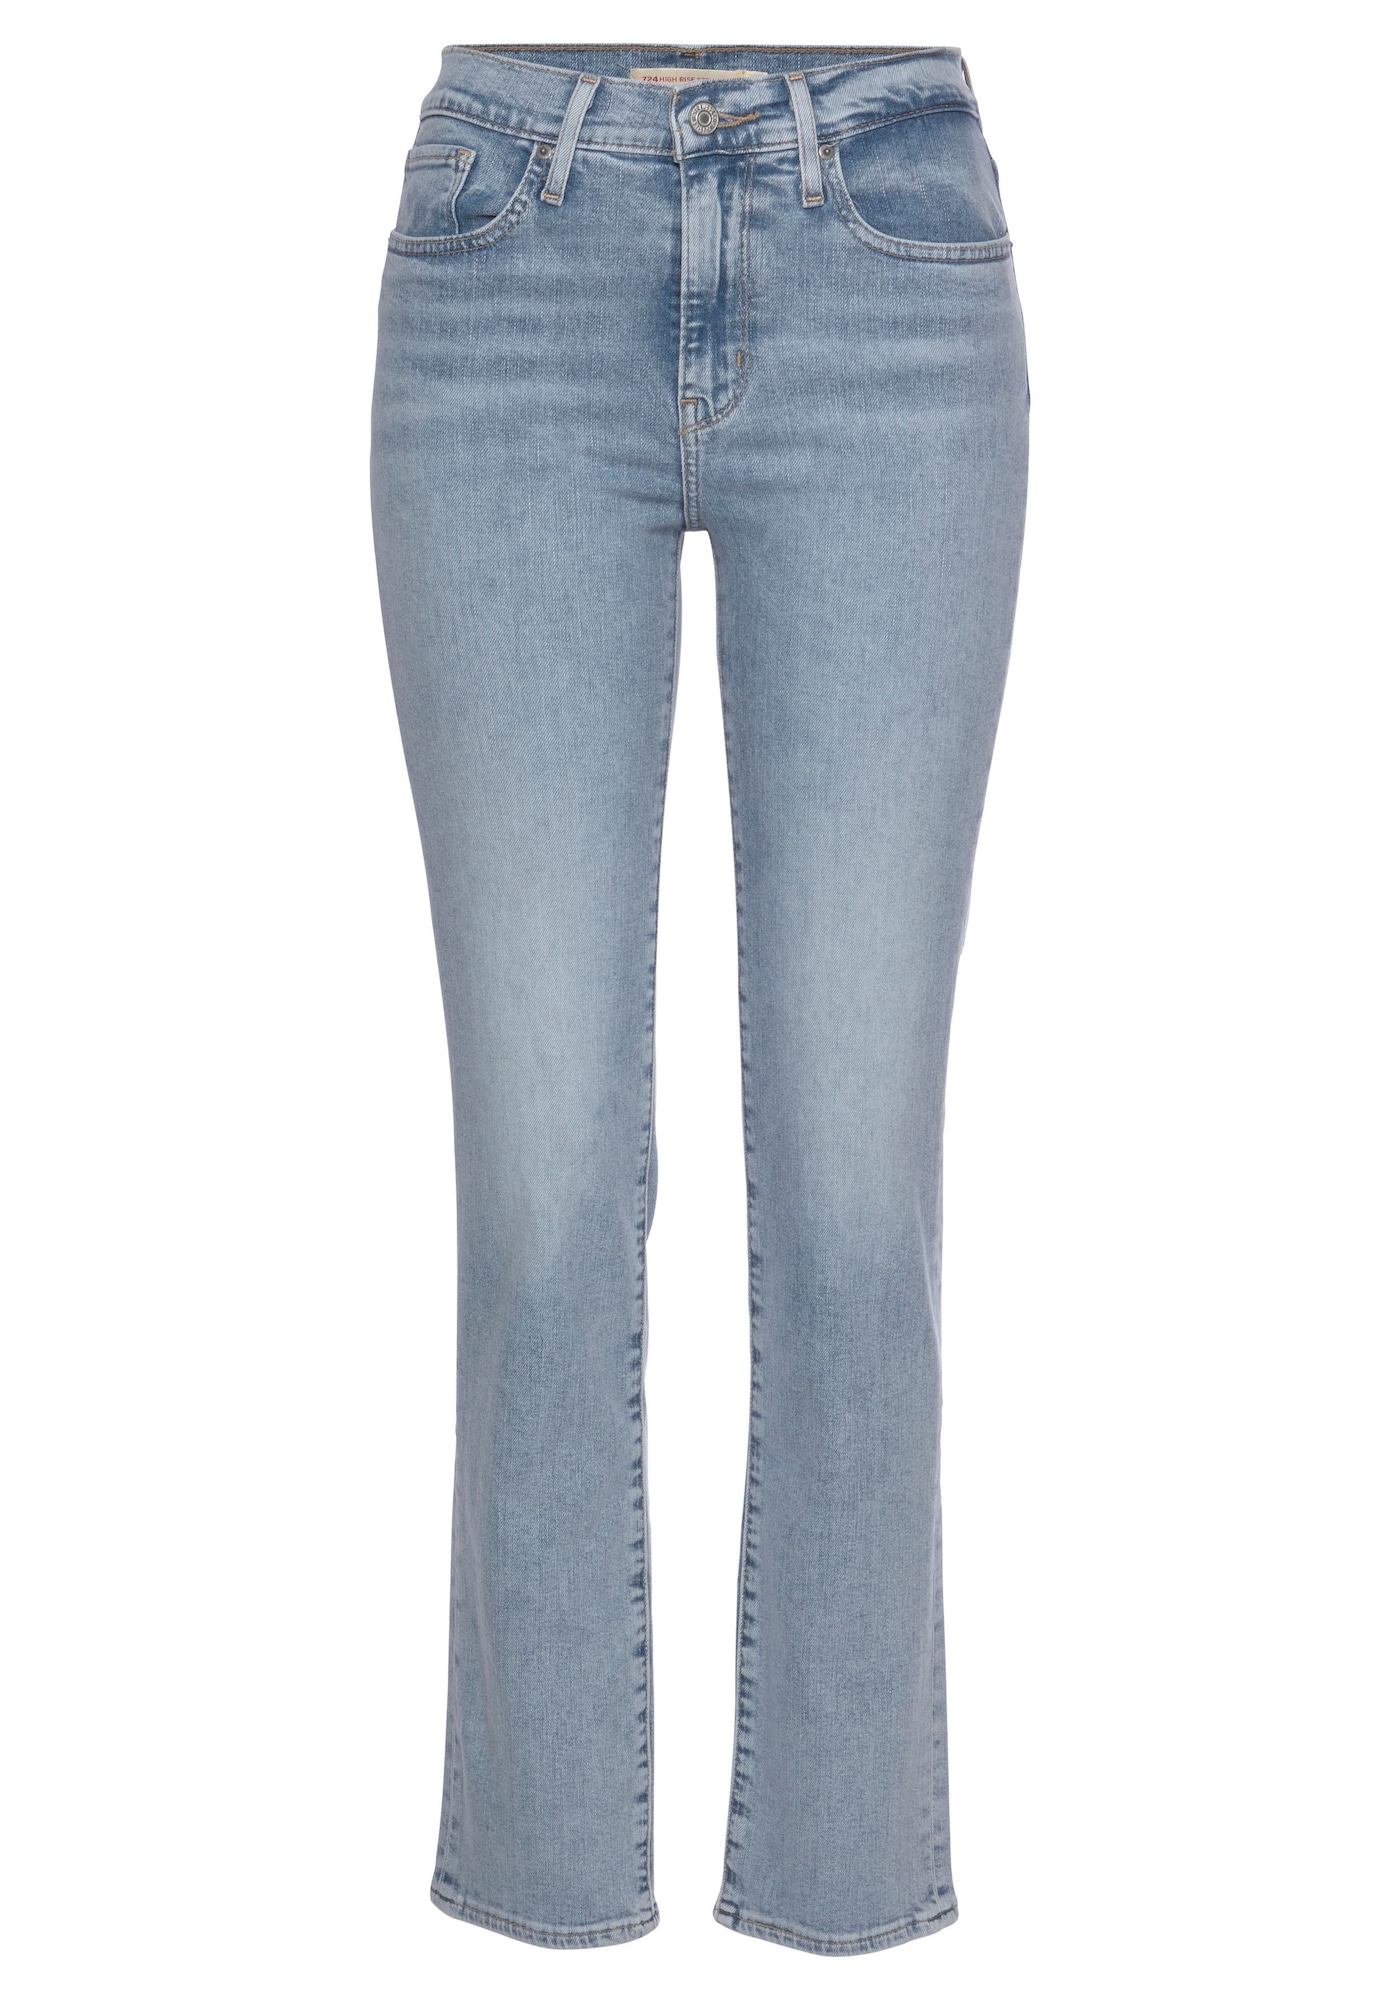 Jeans '724™ HIGH RISE STRAIGHT' von Levis